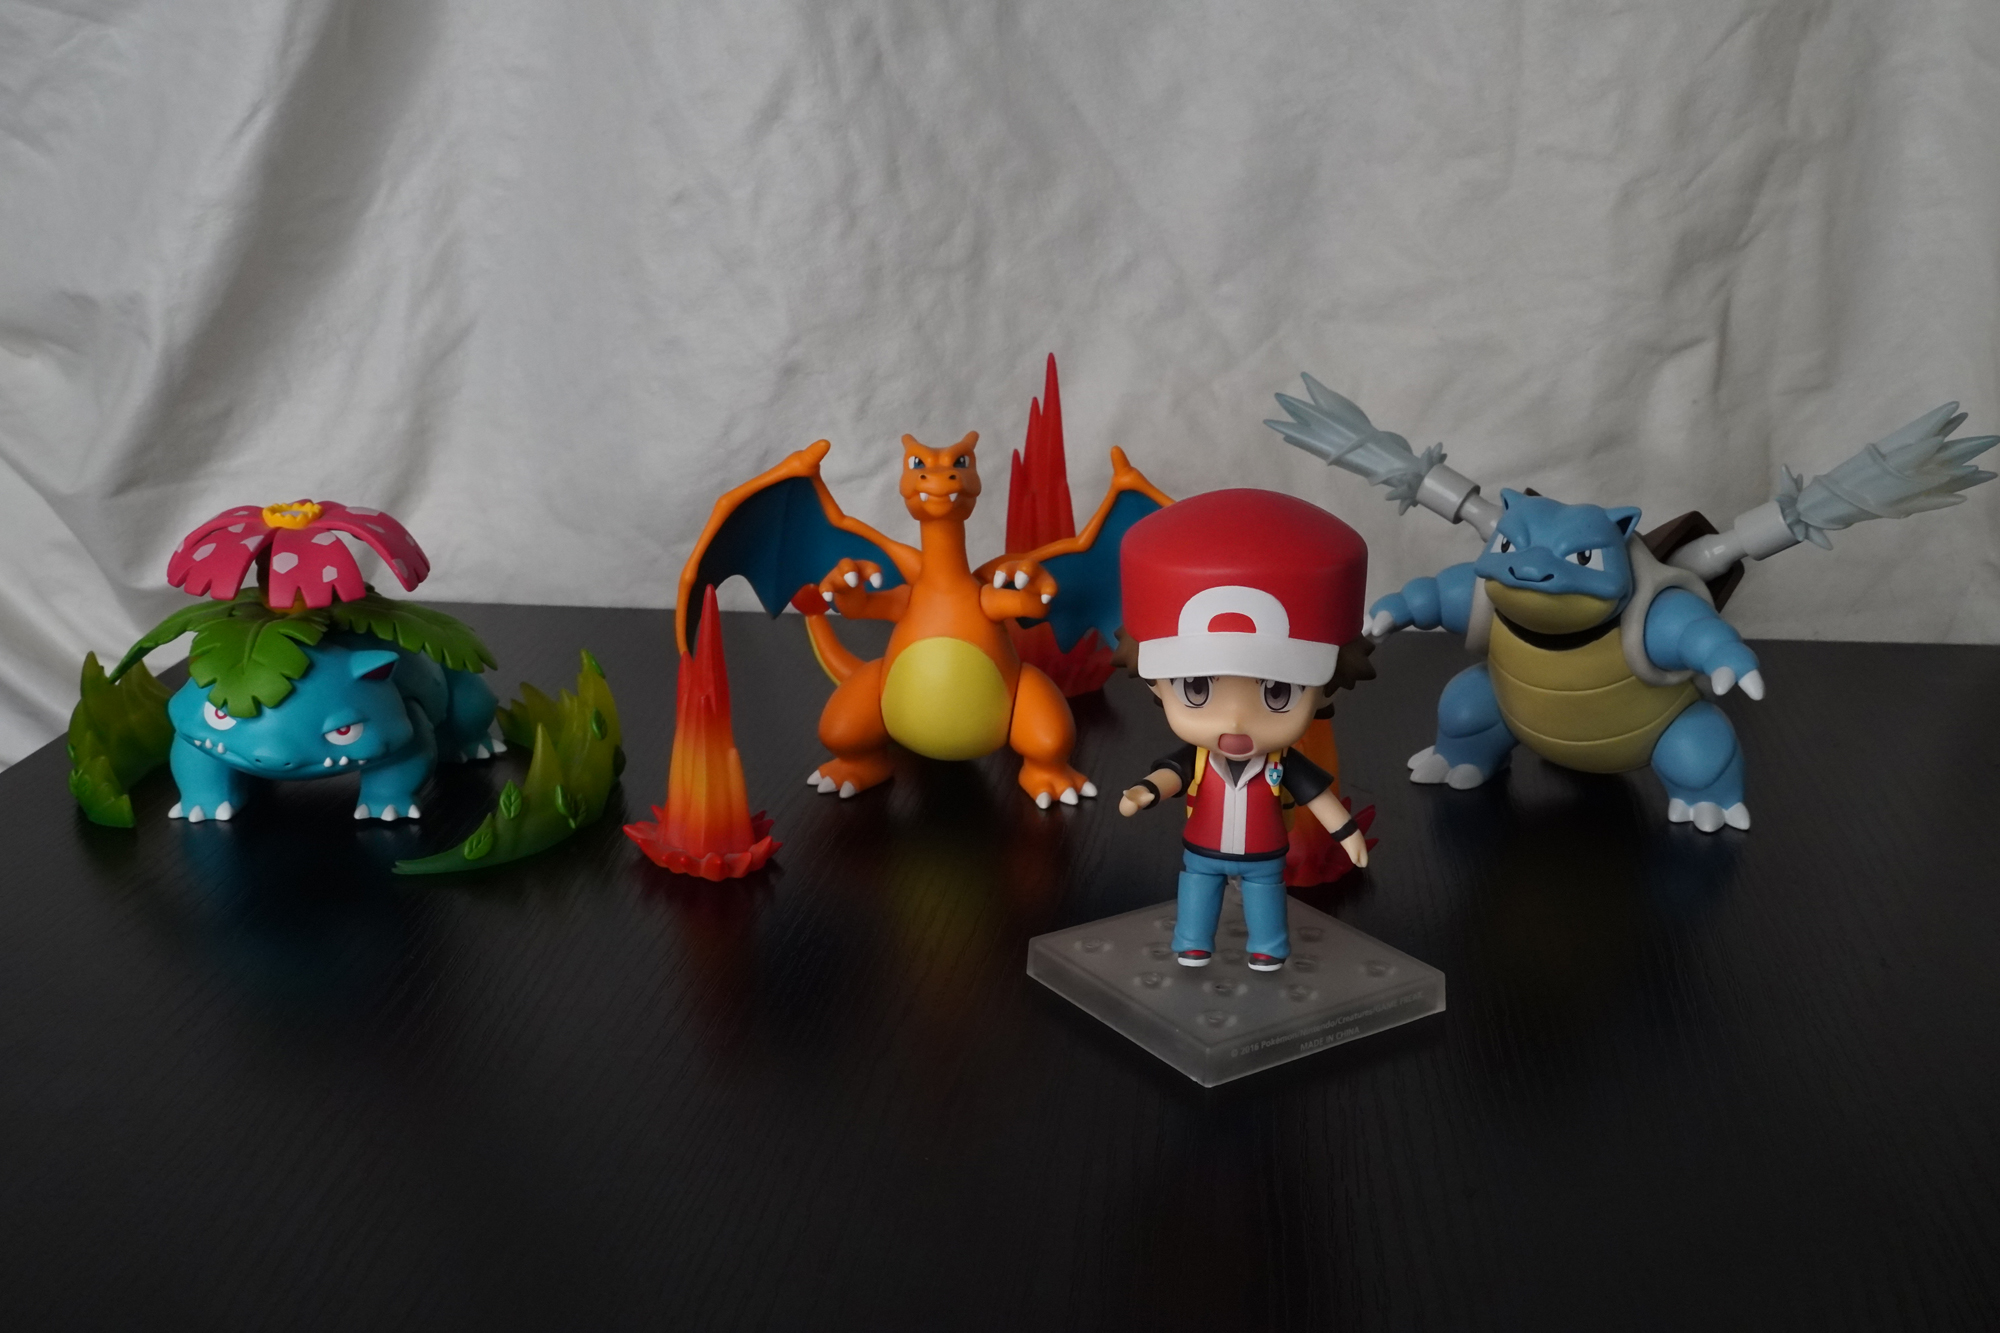 Nendoroid Red Posable Figure  Pokémon Center Official Site